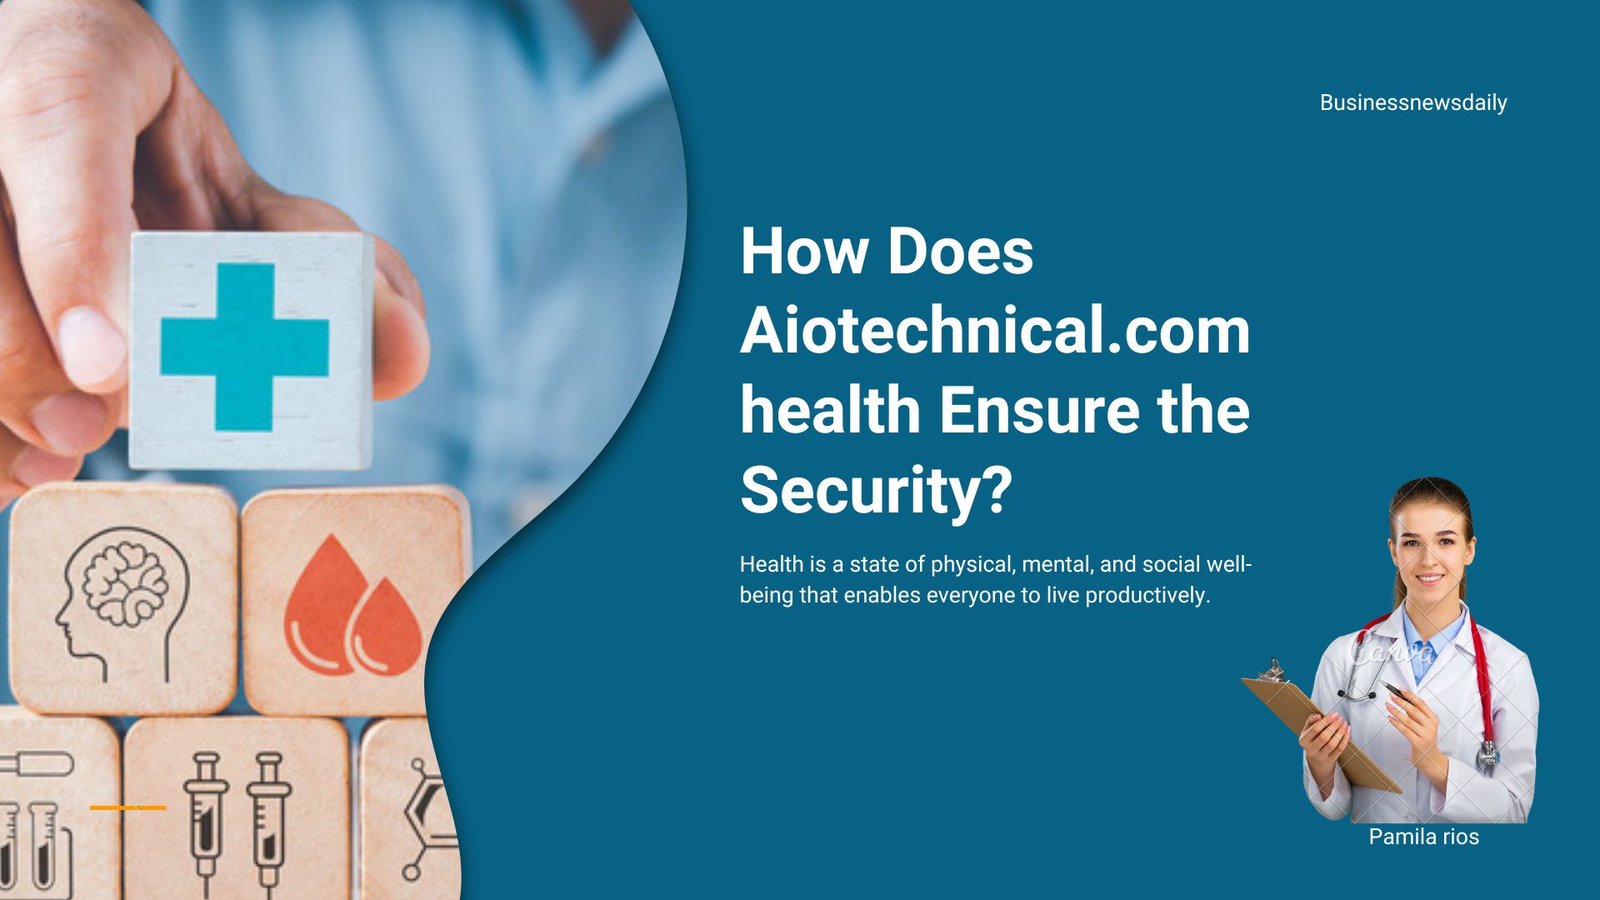 Aiotechnical.com health